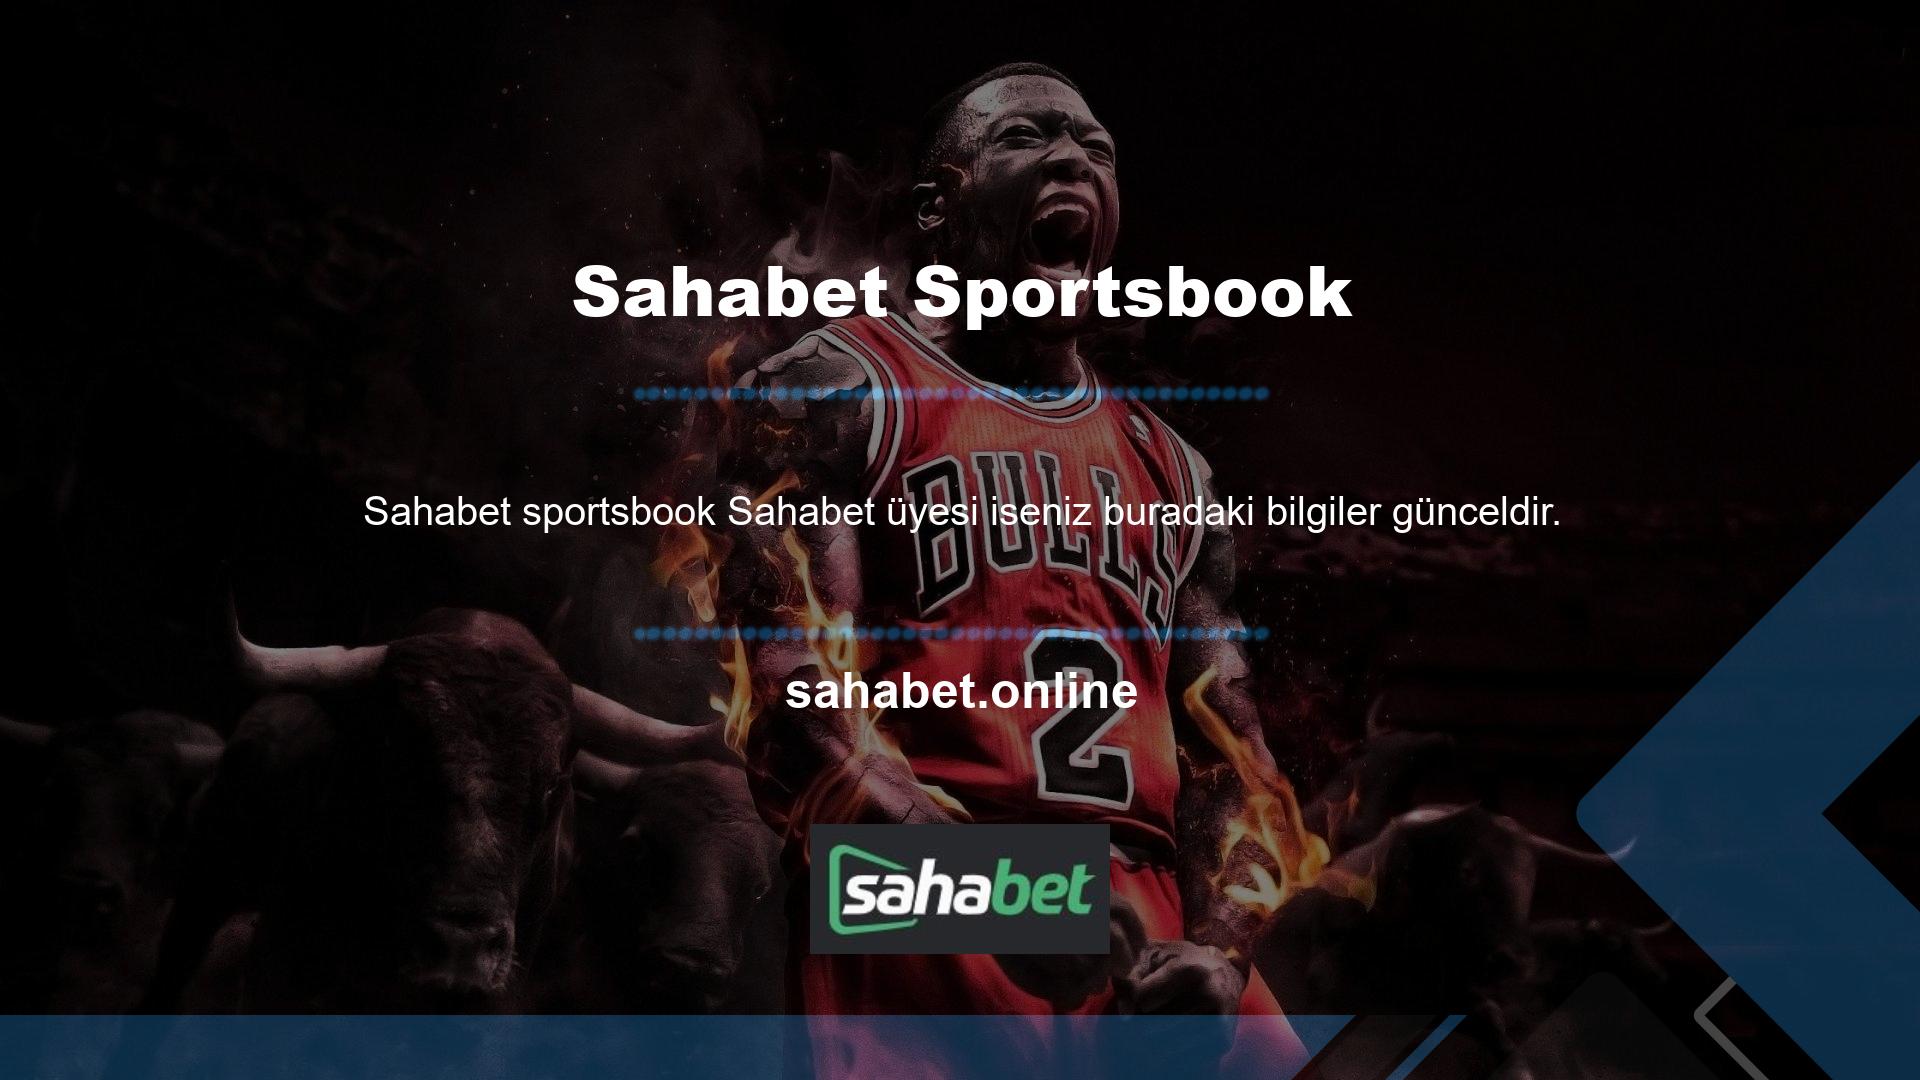 Sahabet sportsbook